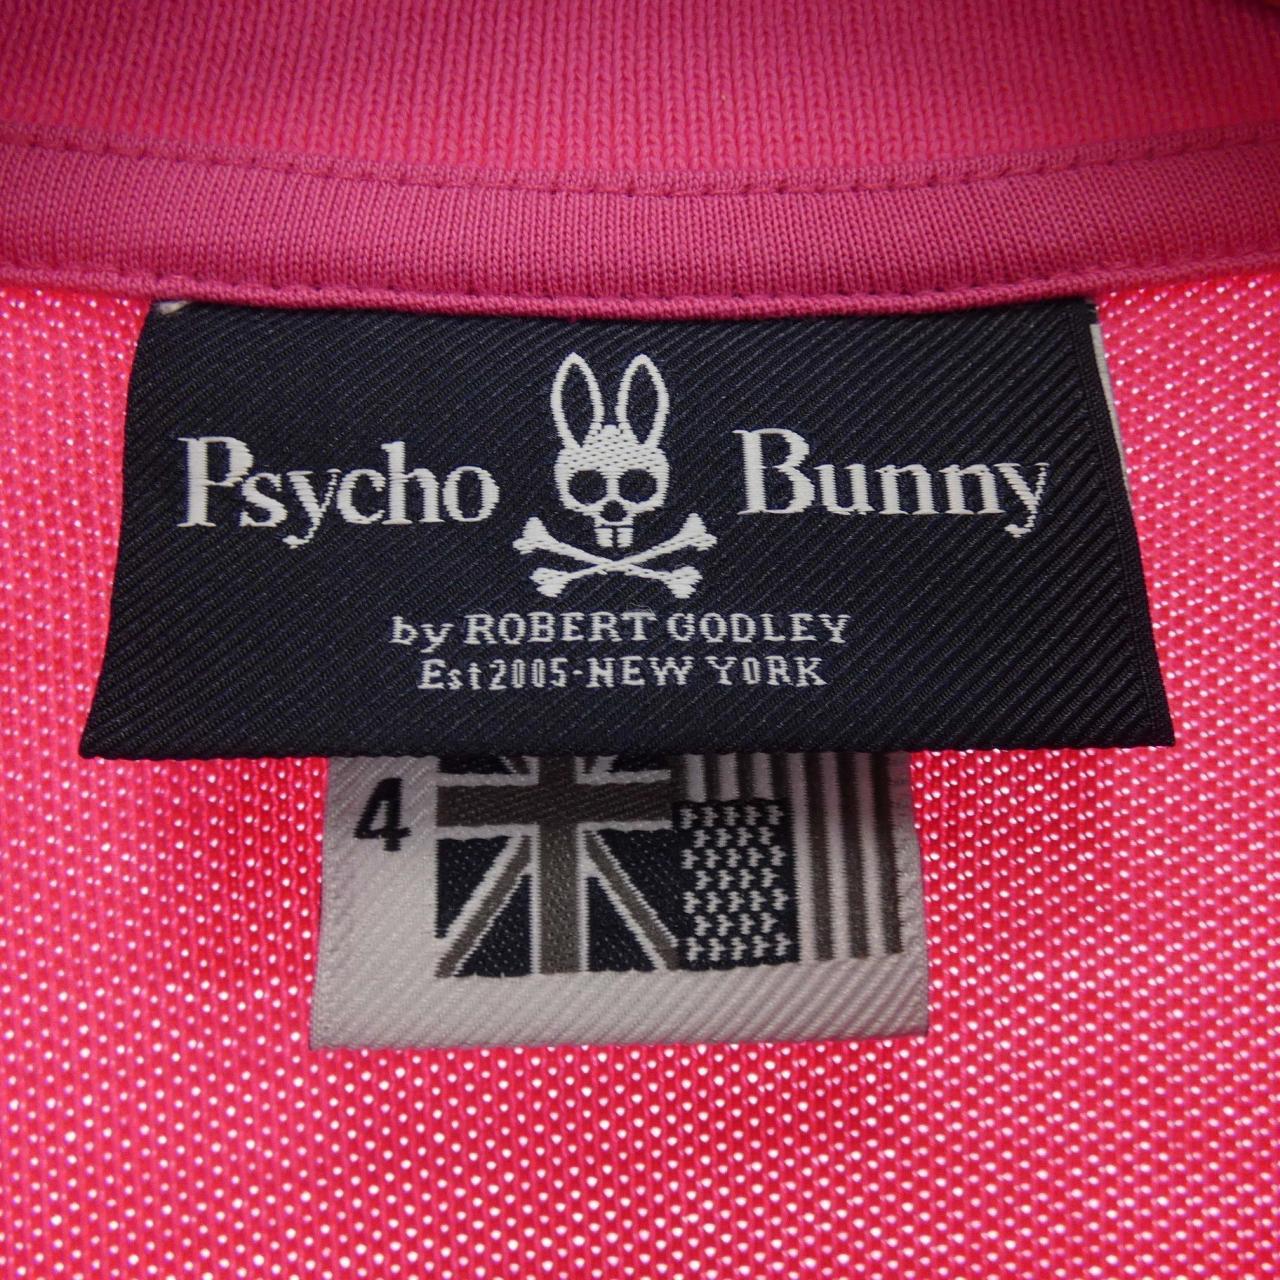 Psycho Bunny PSYCHO BUNNY polo shirt